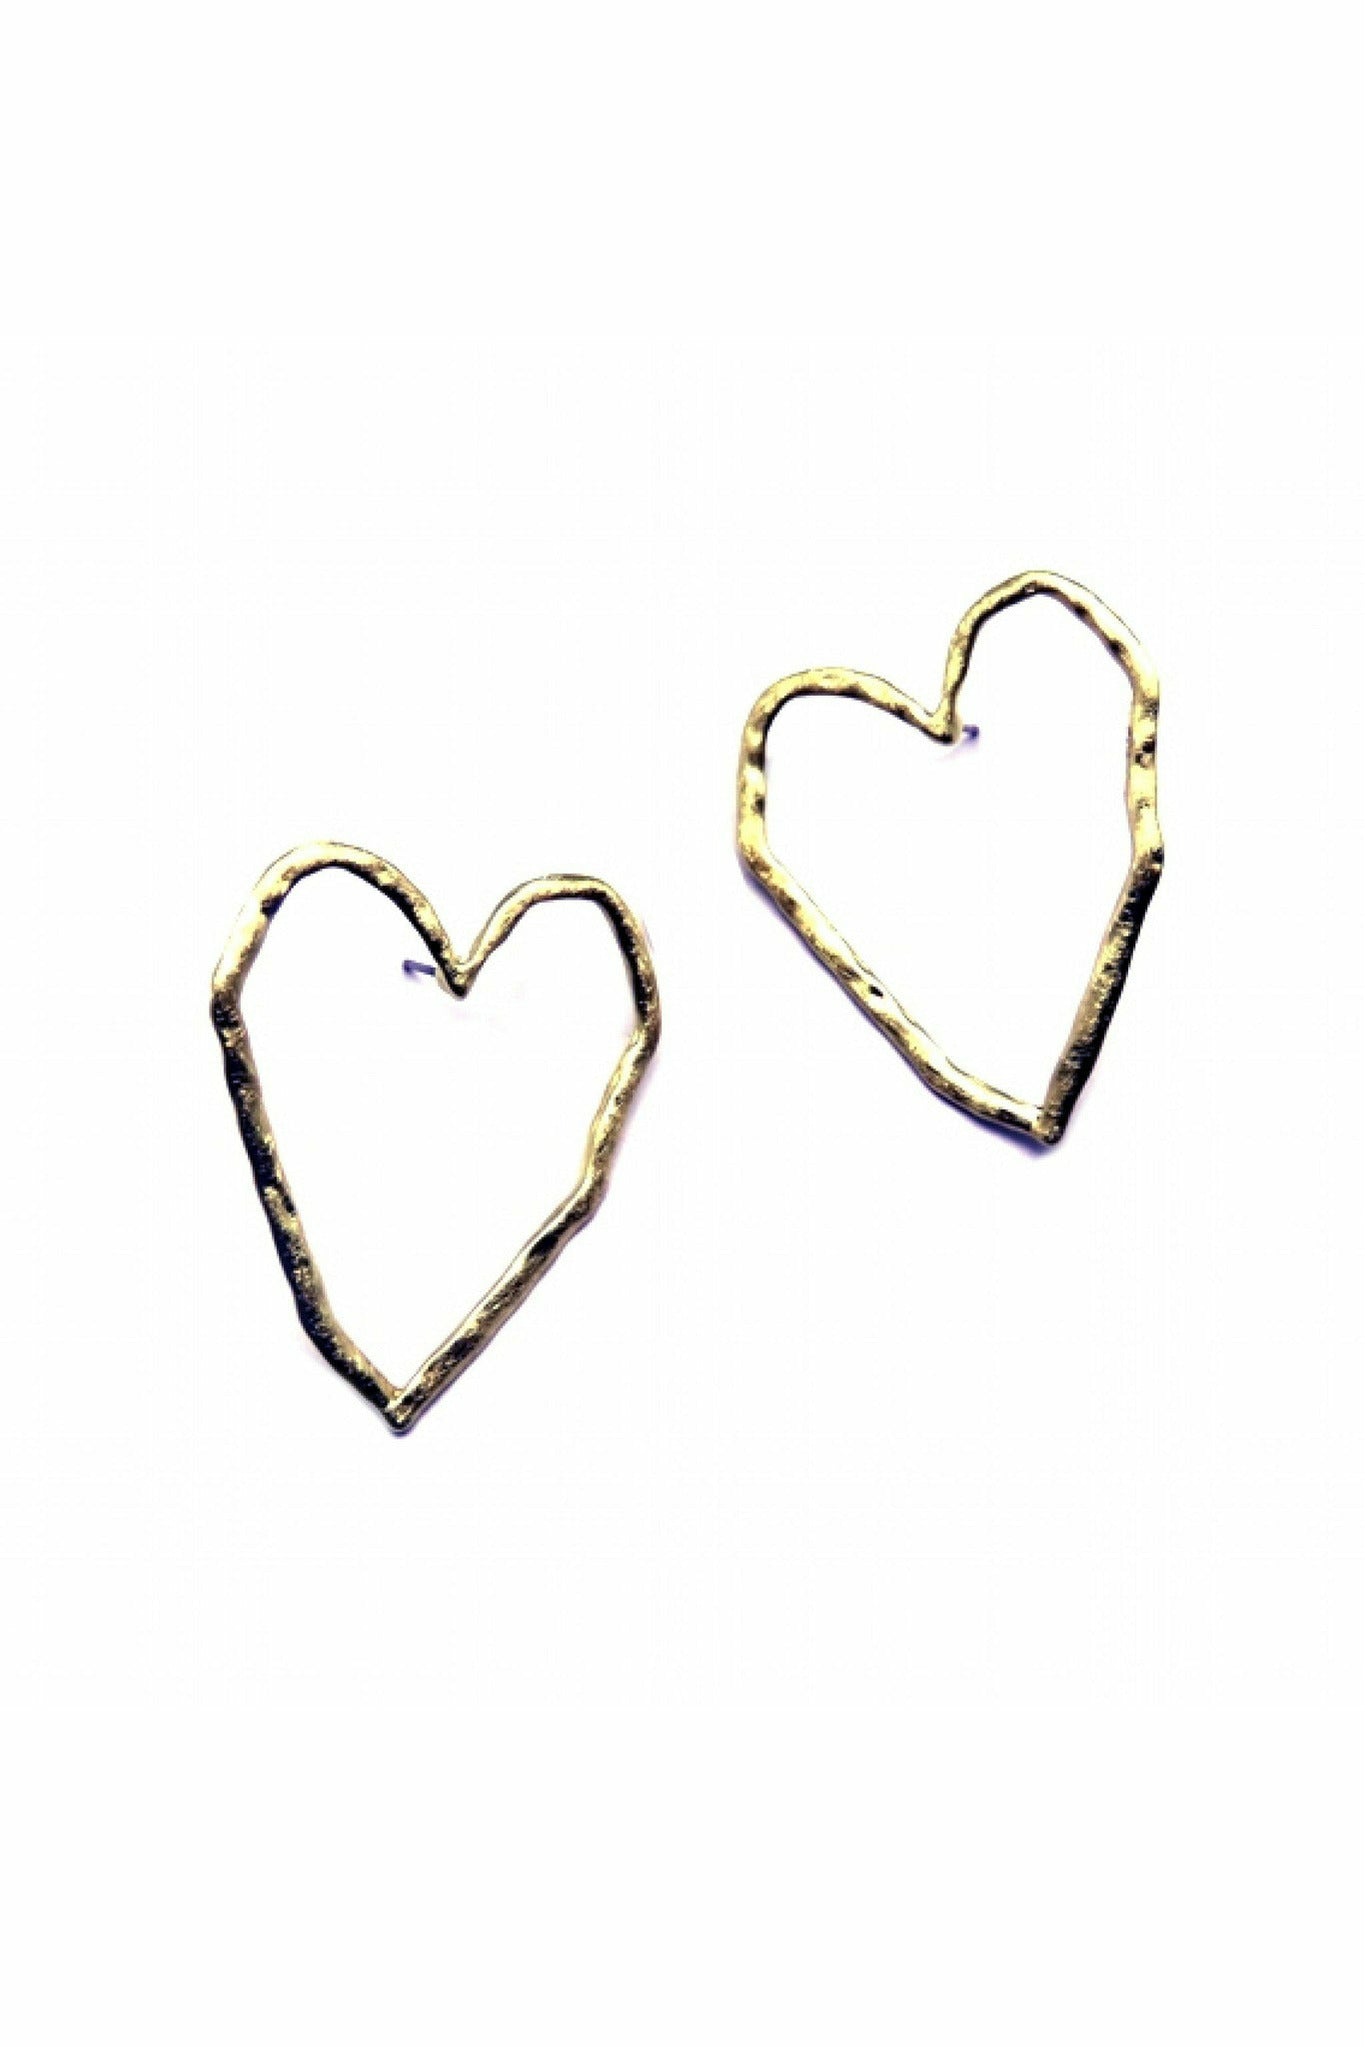 Heart Silhouette Earring In Hammered Matt Gold EAS67G